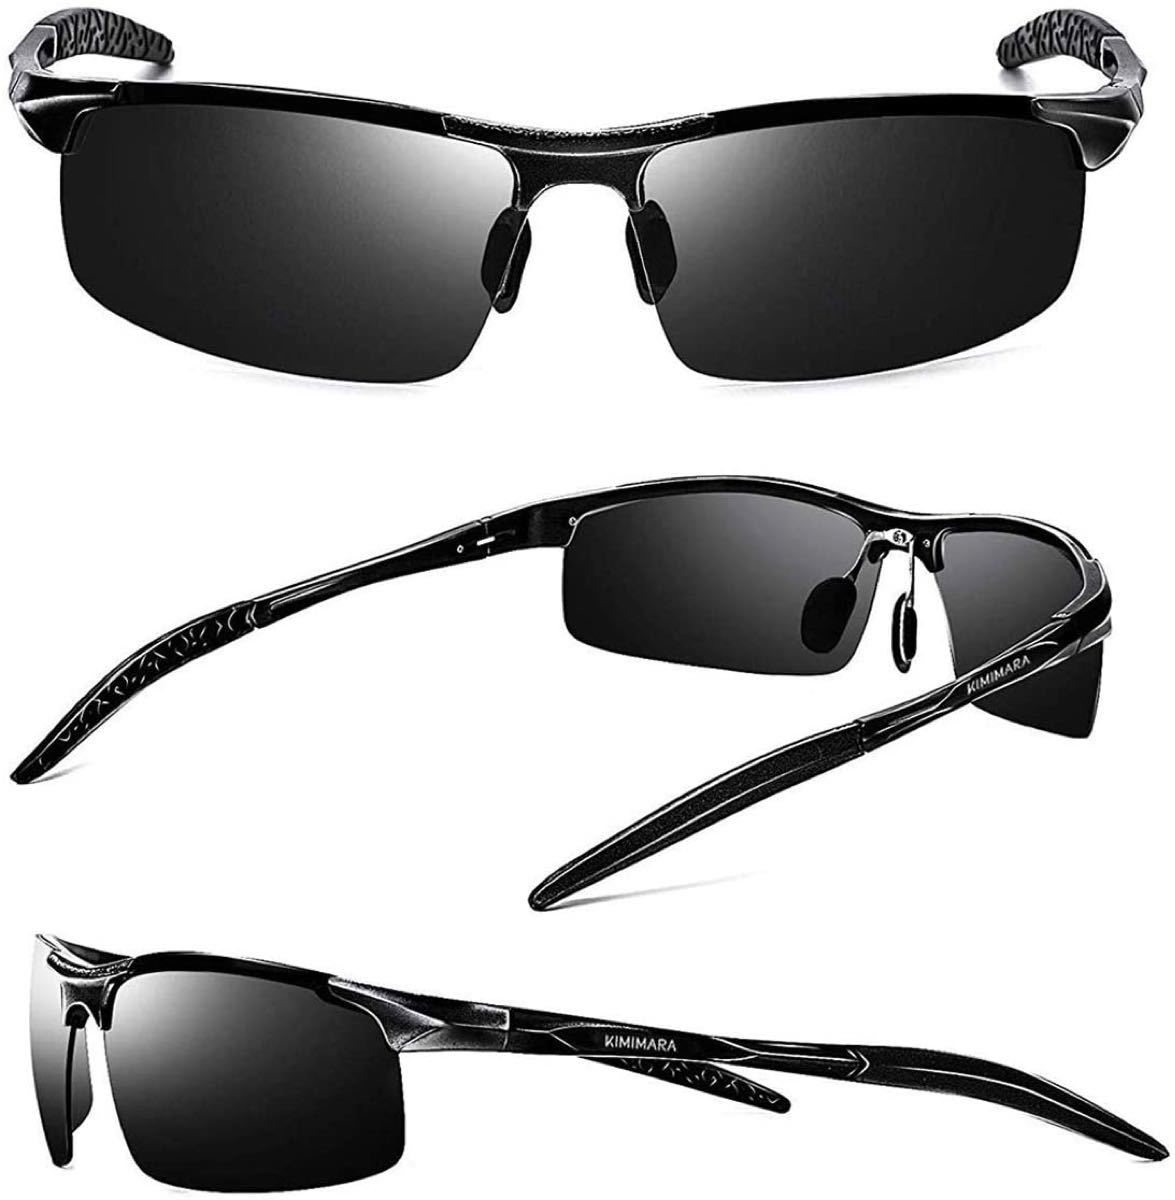 スポーツサングラス UV400 紫外線カット 超軽量メタル 超抗衝撃 男女兼用